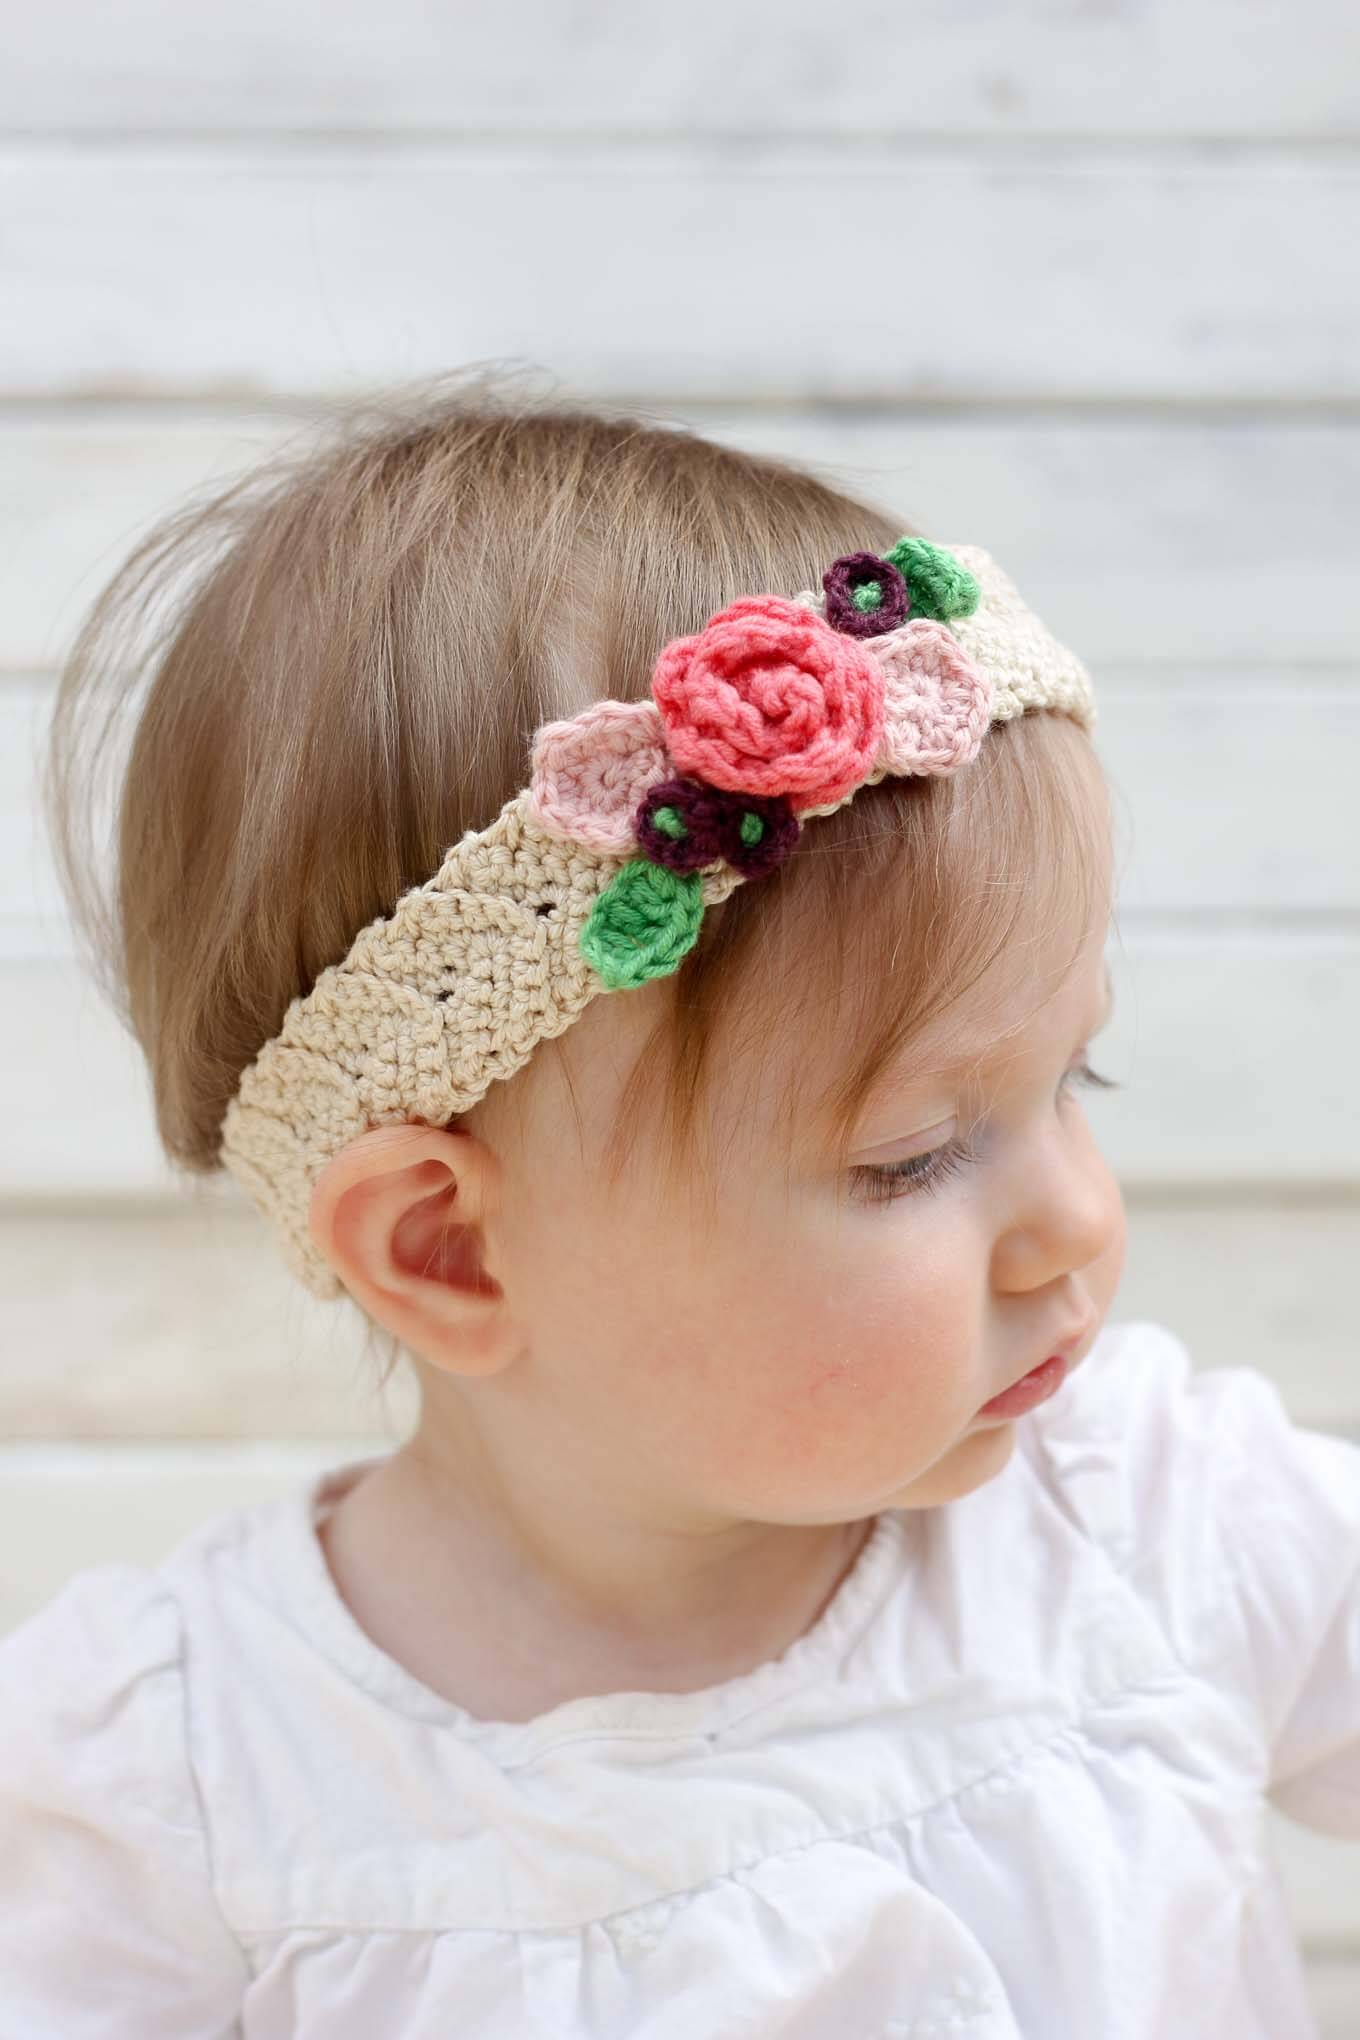 Knit Headband Pattern With Flower Free Crochet Headband Pattern With Flower Crochet And Knit